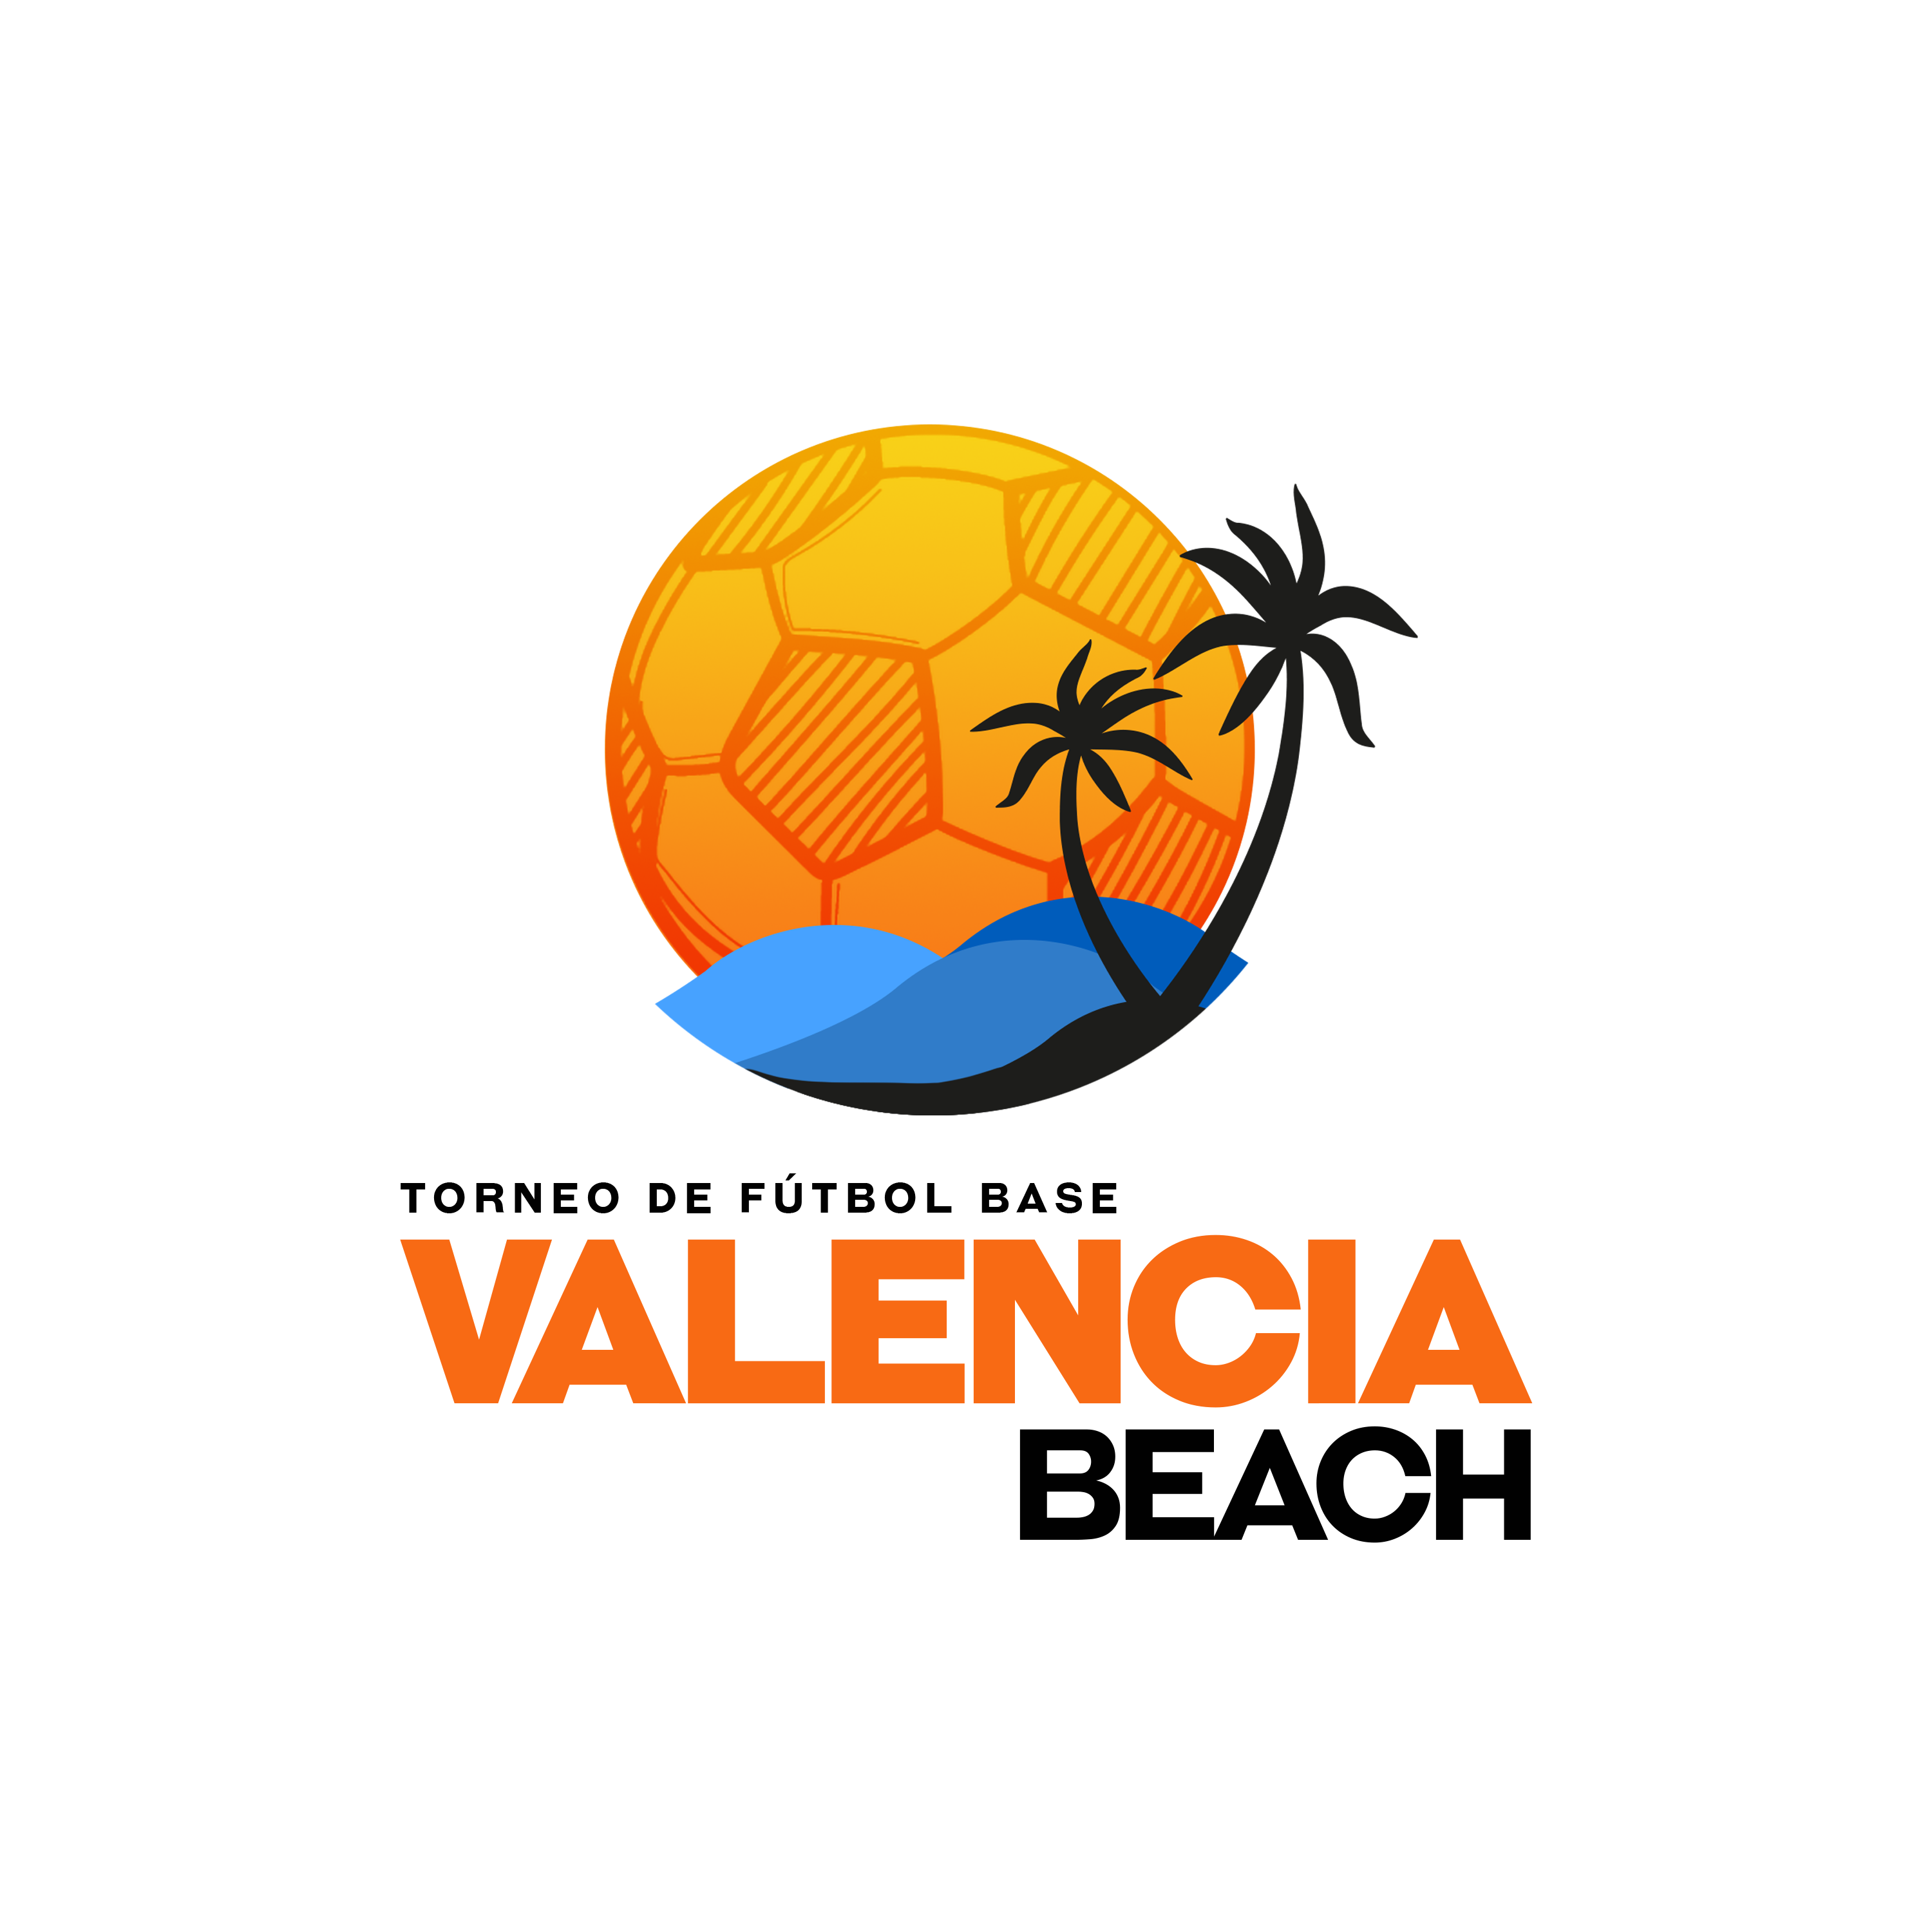 Valenciabeachcup